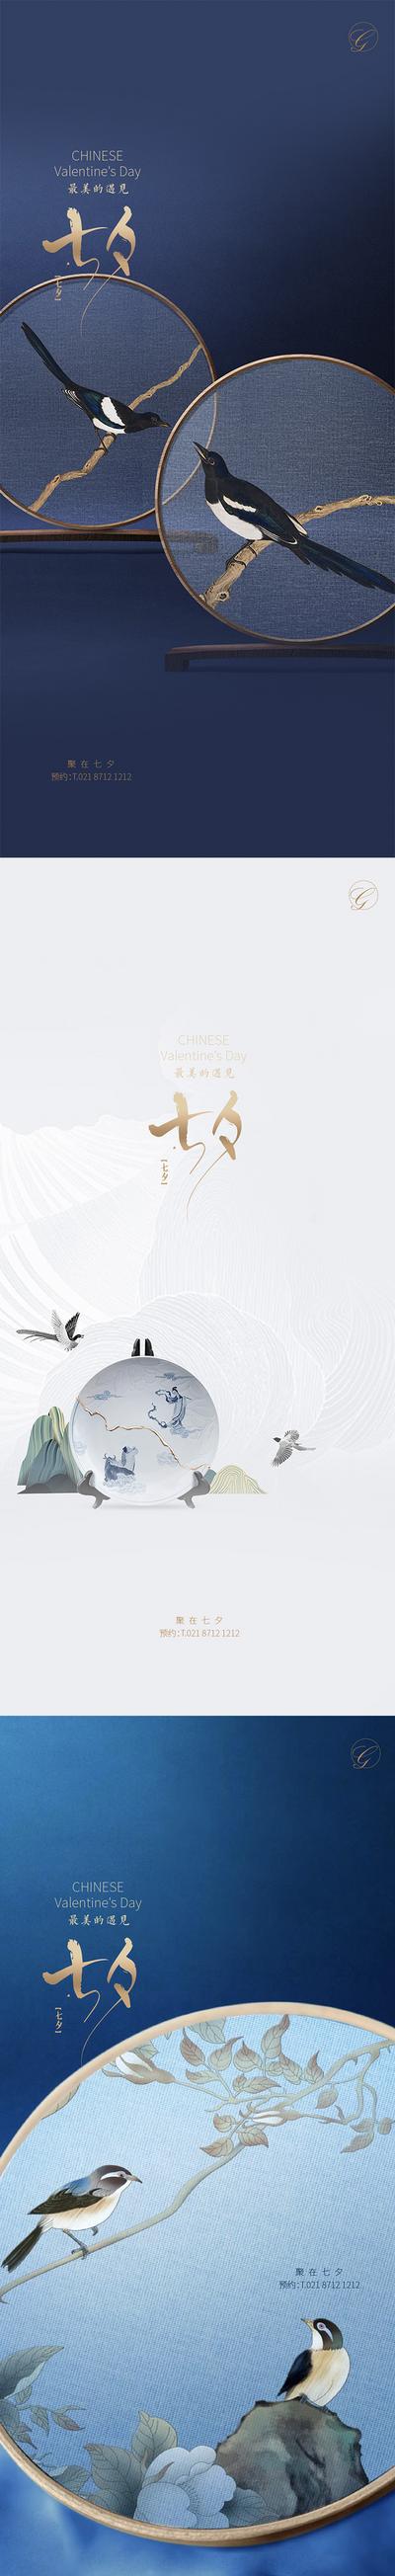 南门网 海报 中国传统节日 七夕 喜鹊 中式 爱情 刺绣 屏风